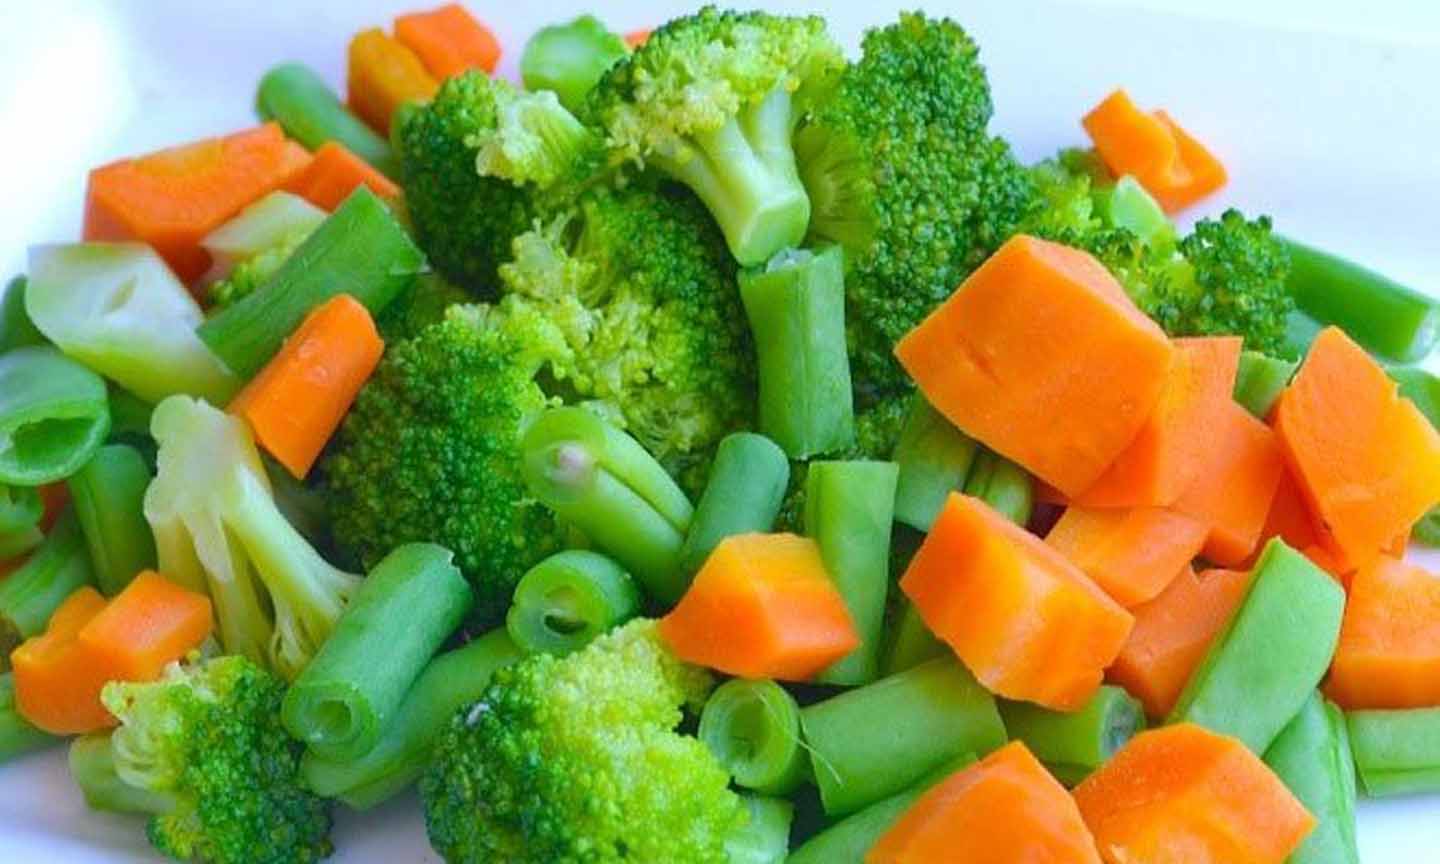 Luộc hoặc xào rau, không nên nấu quá lâu và cho quá nhiều rau vào chảo, làm mất mùi vị của rau. (Ảnh: Wiki).